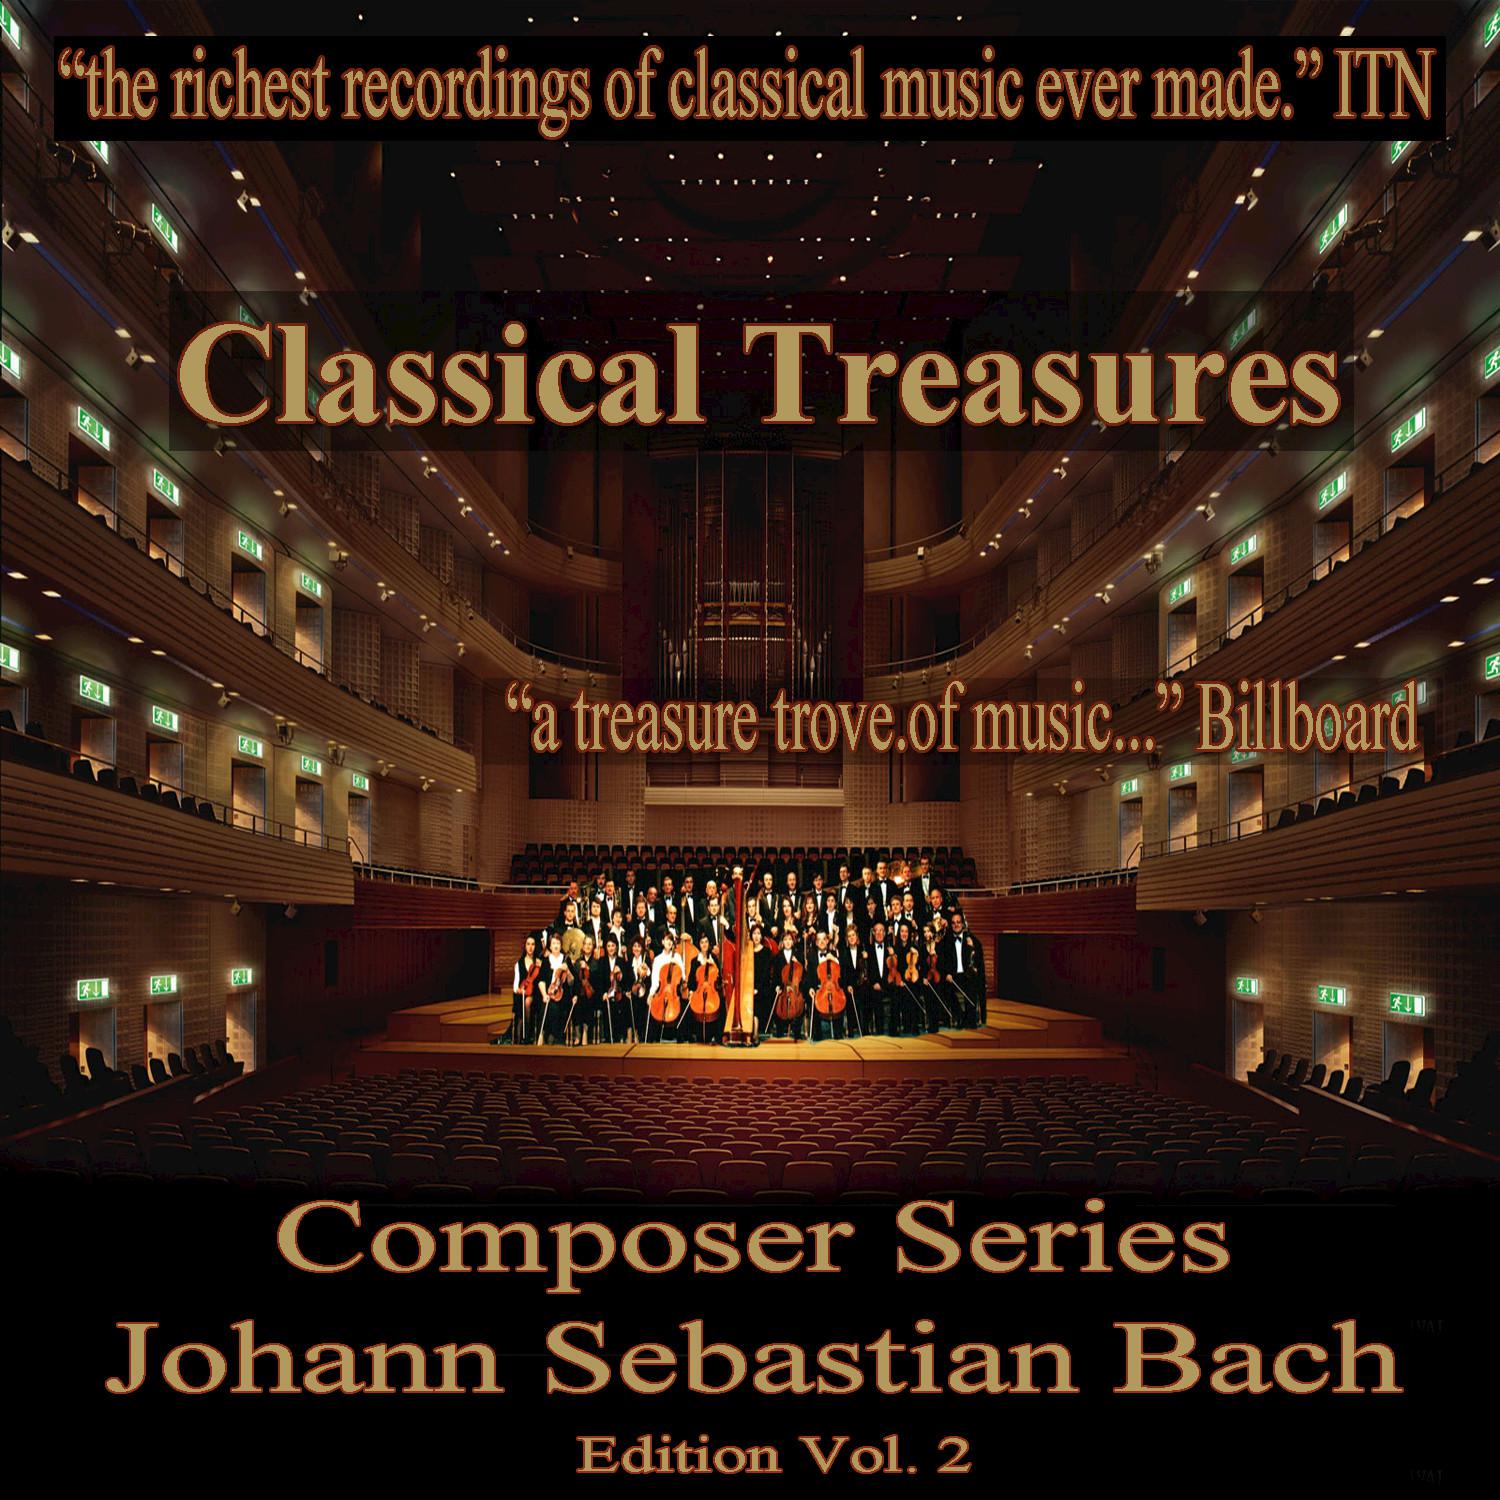 David Oistrakh - Sonata for 2 Violins and Continuo in C Major, BWV 1037: Adagio